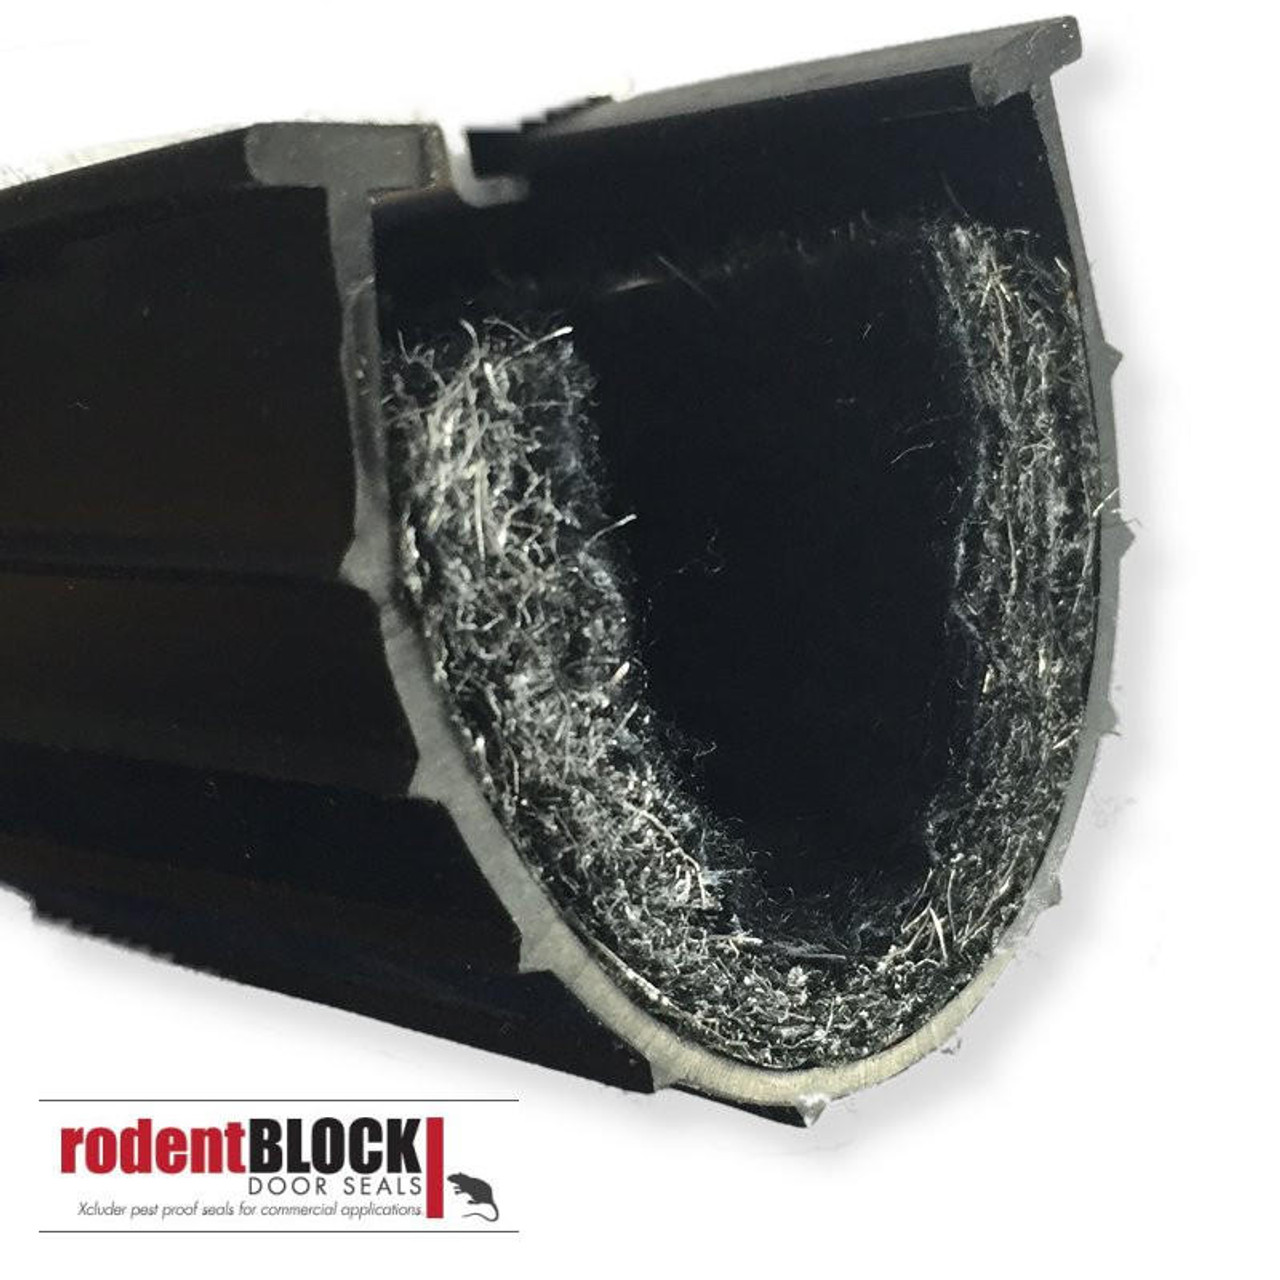 RodentBlock RodentBLOCK Door Seals With Xcluder 4 BY THE FOOT